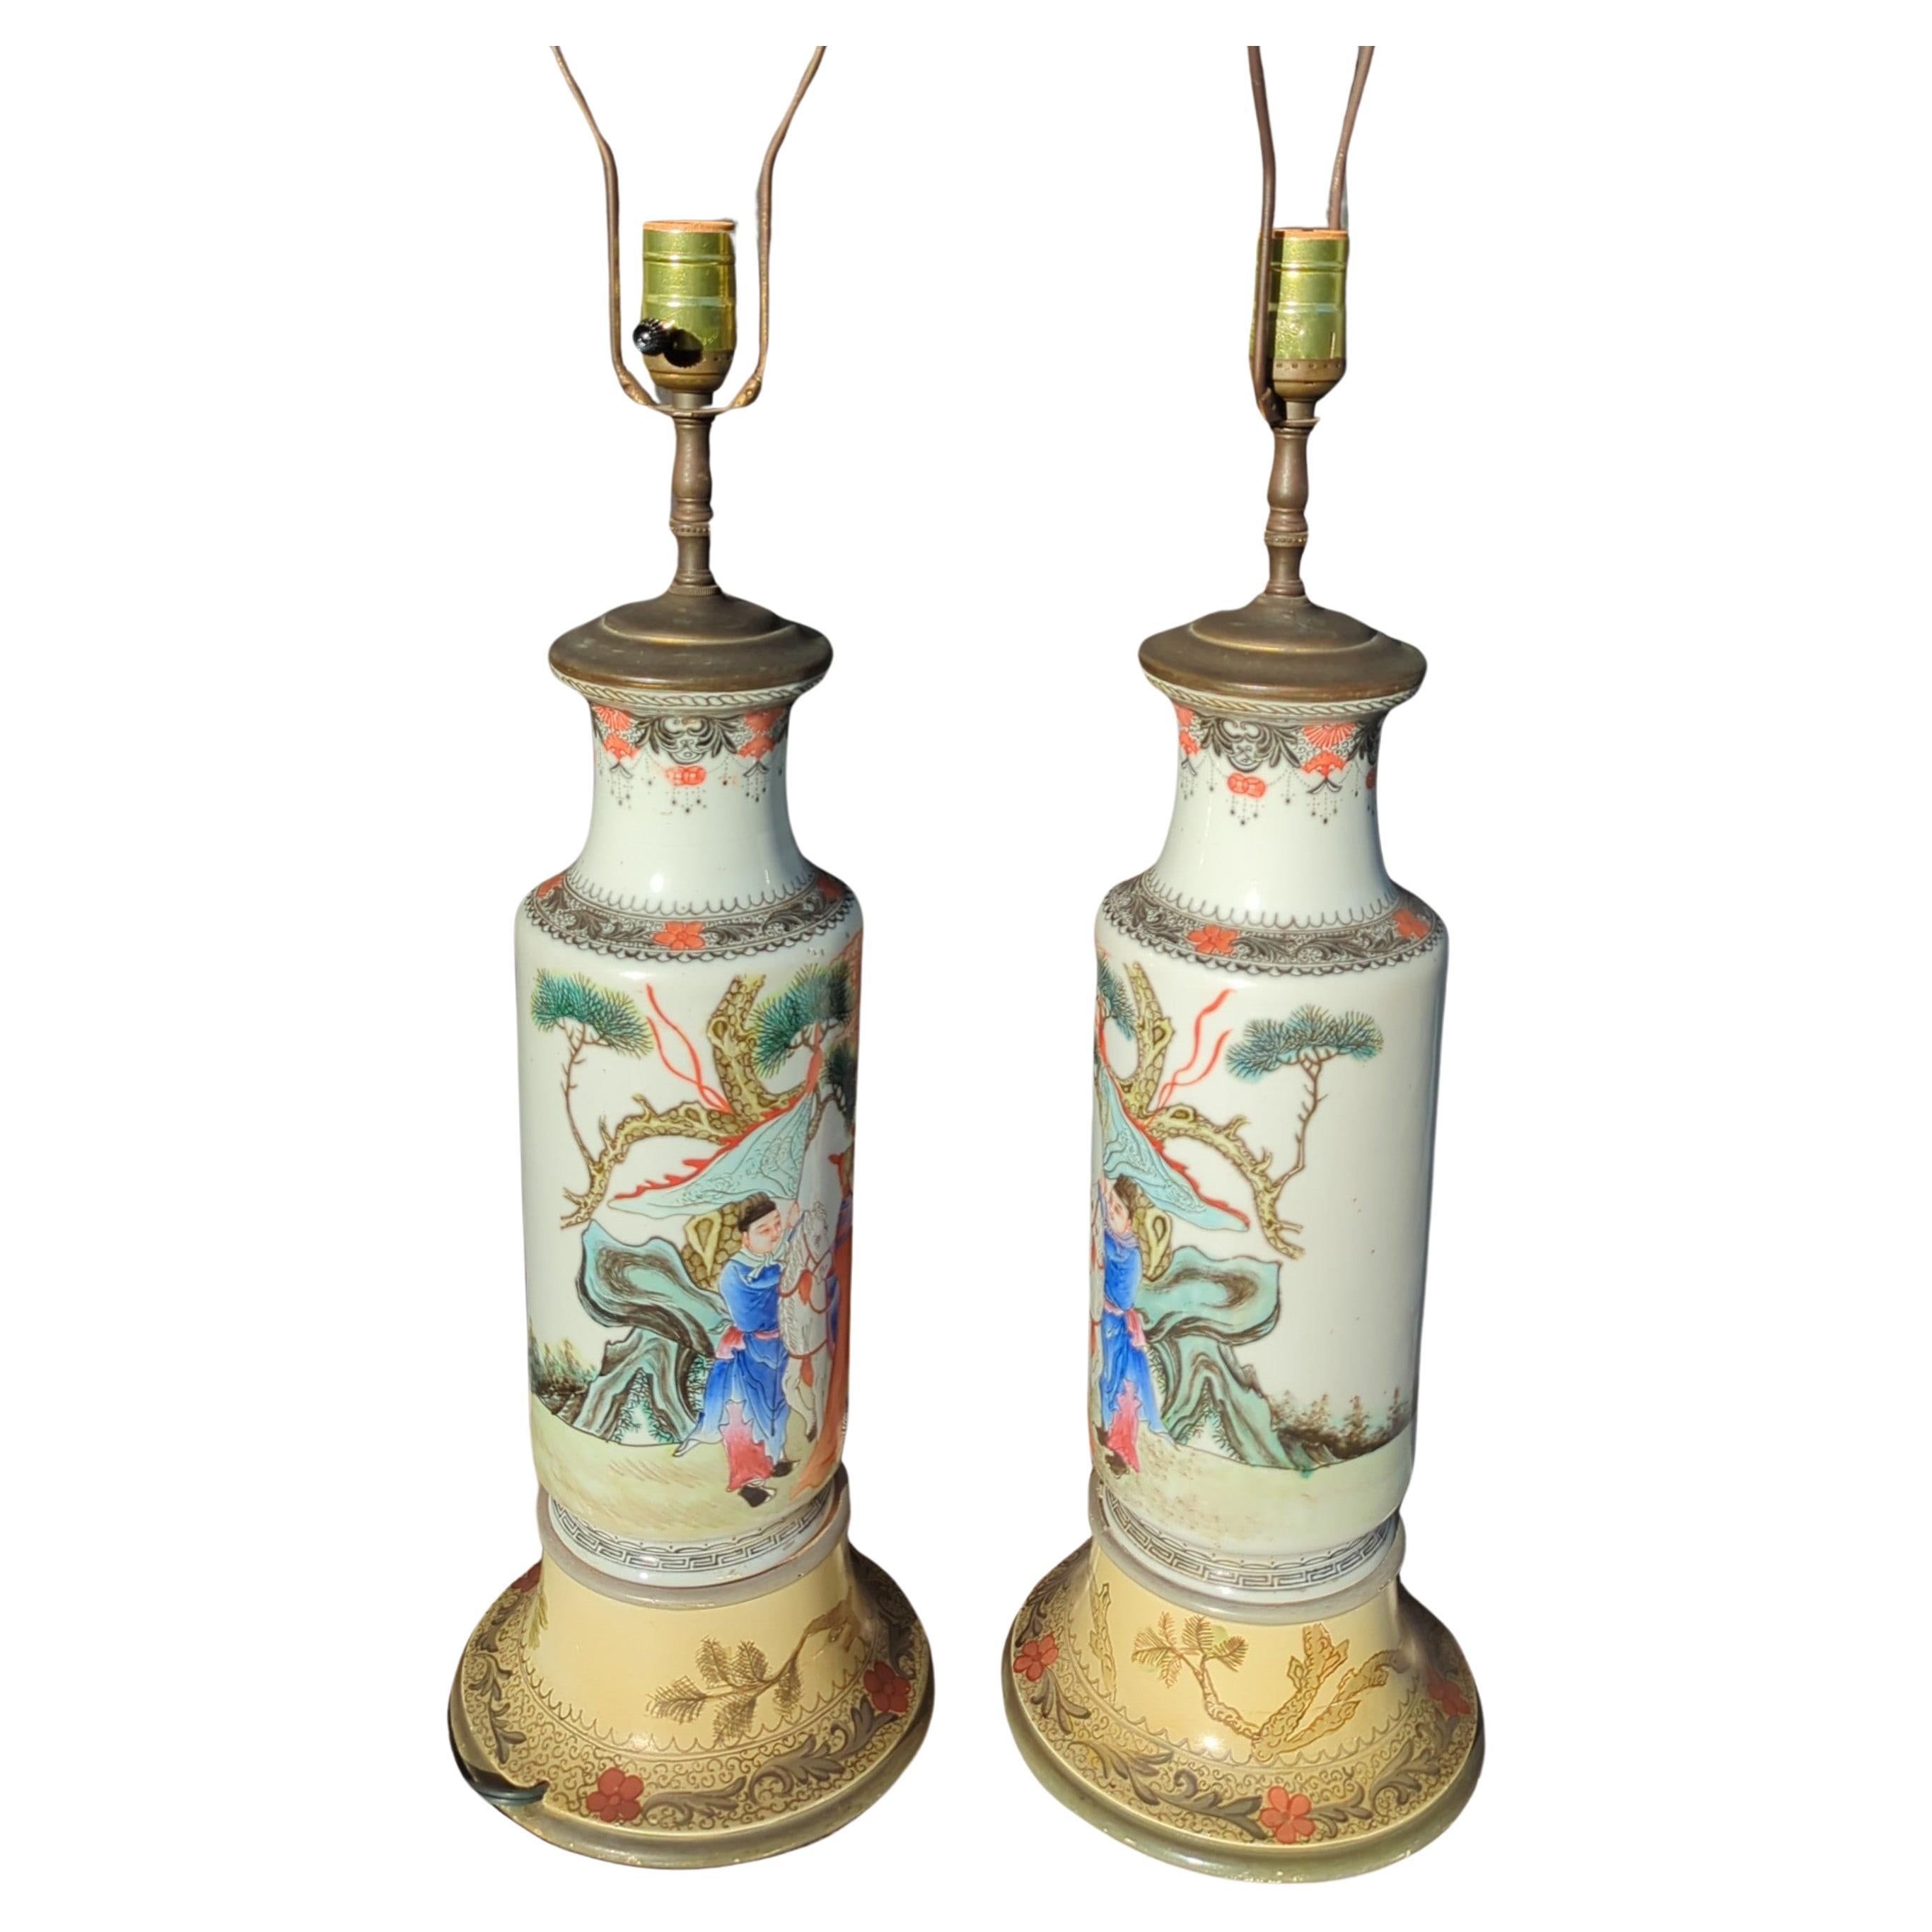 Paire de miroirs assortis, vase à rouleau figuré de la famille rose chinoise du début du 20e siècle, transformés en lampes. Les décorations finement peintes représentent un général levant les yeux au ciel pour contempler un groupe de fées flottantes